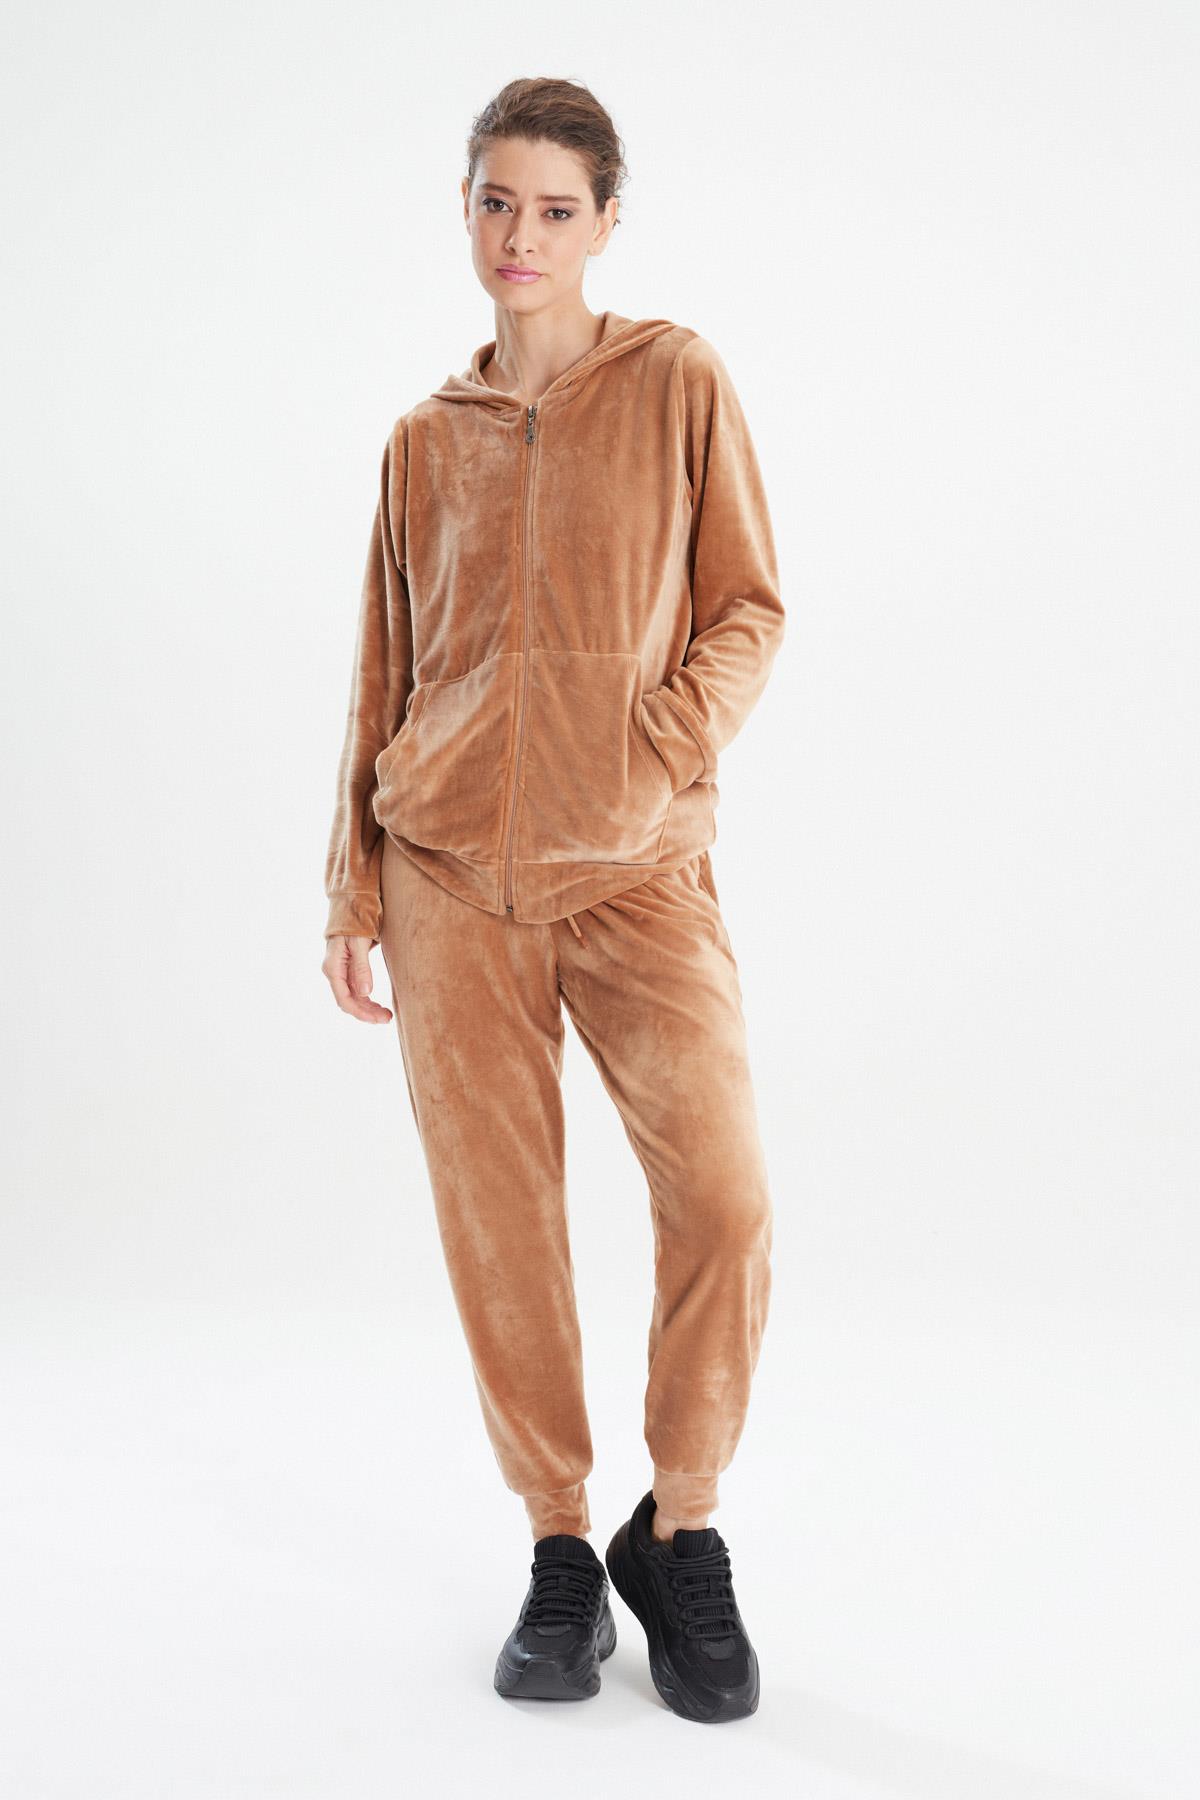 Erdem Kışlık Kadife Pijama Takımı: Erdem İç Giyim